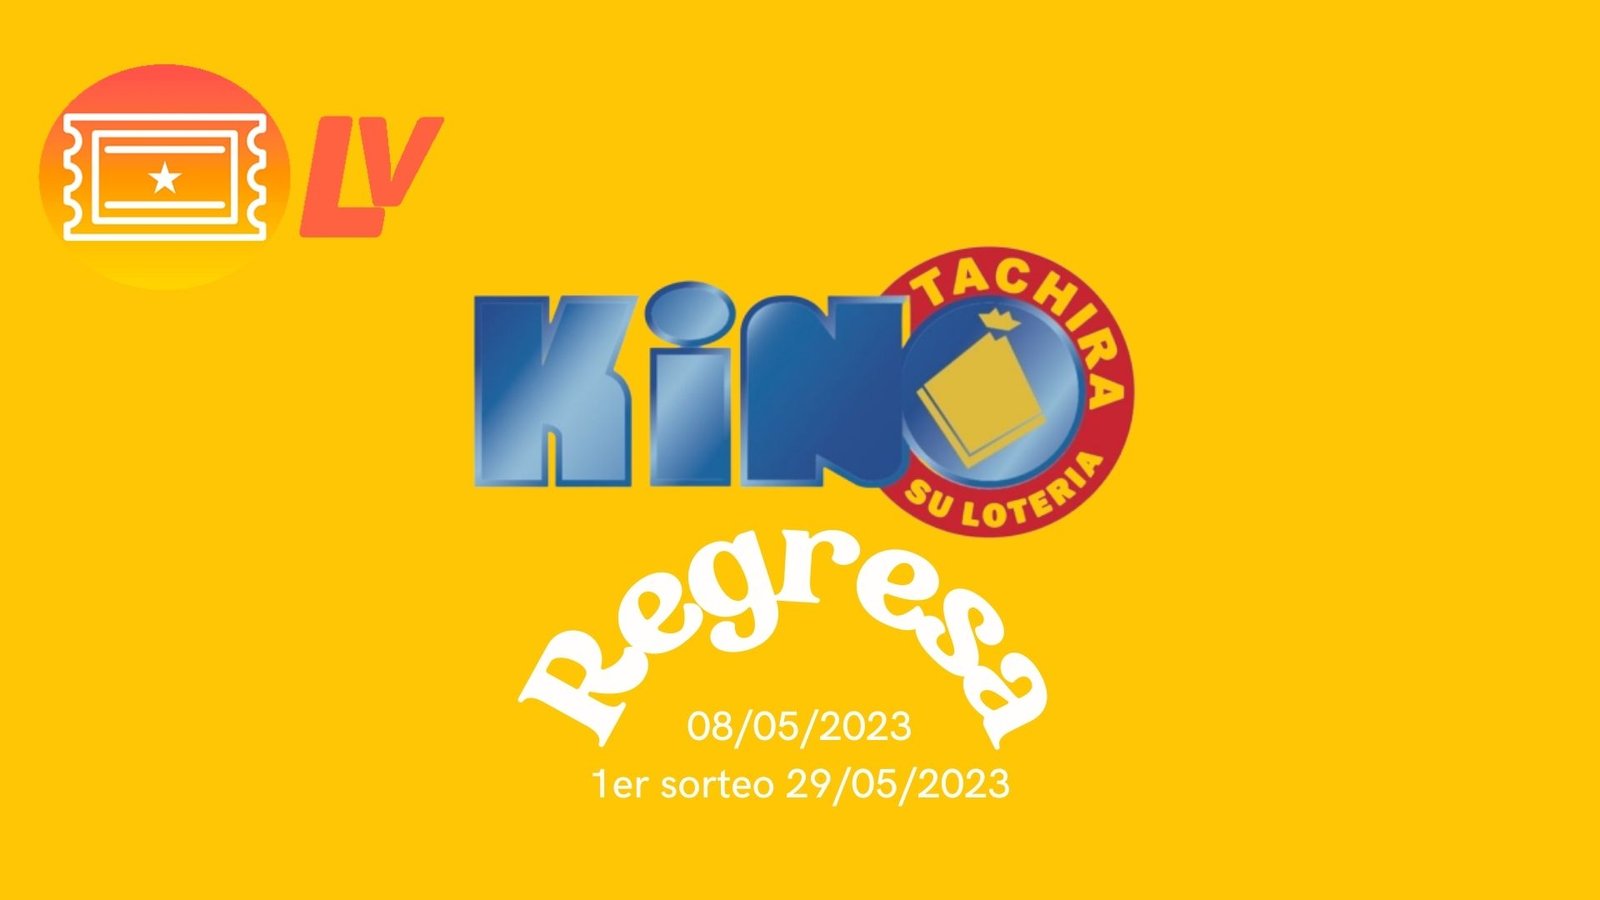 Kino tachira regresa el 08 de mayo 2023